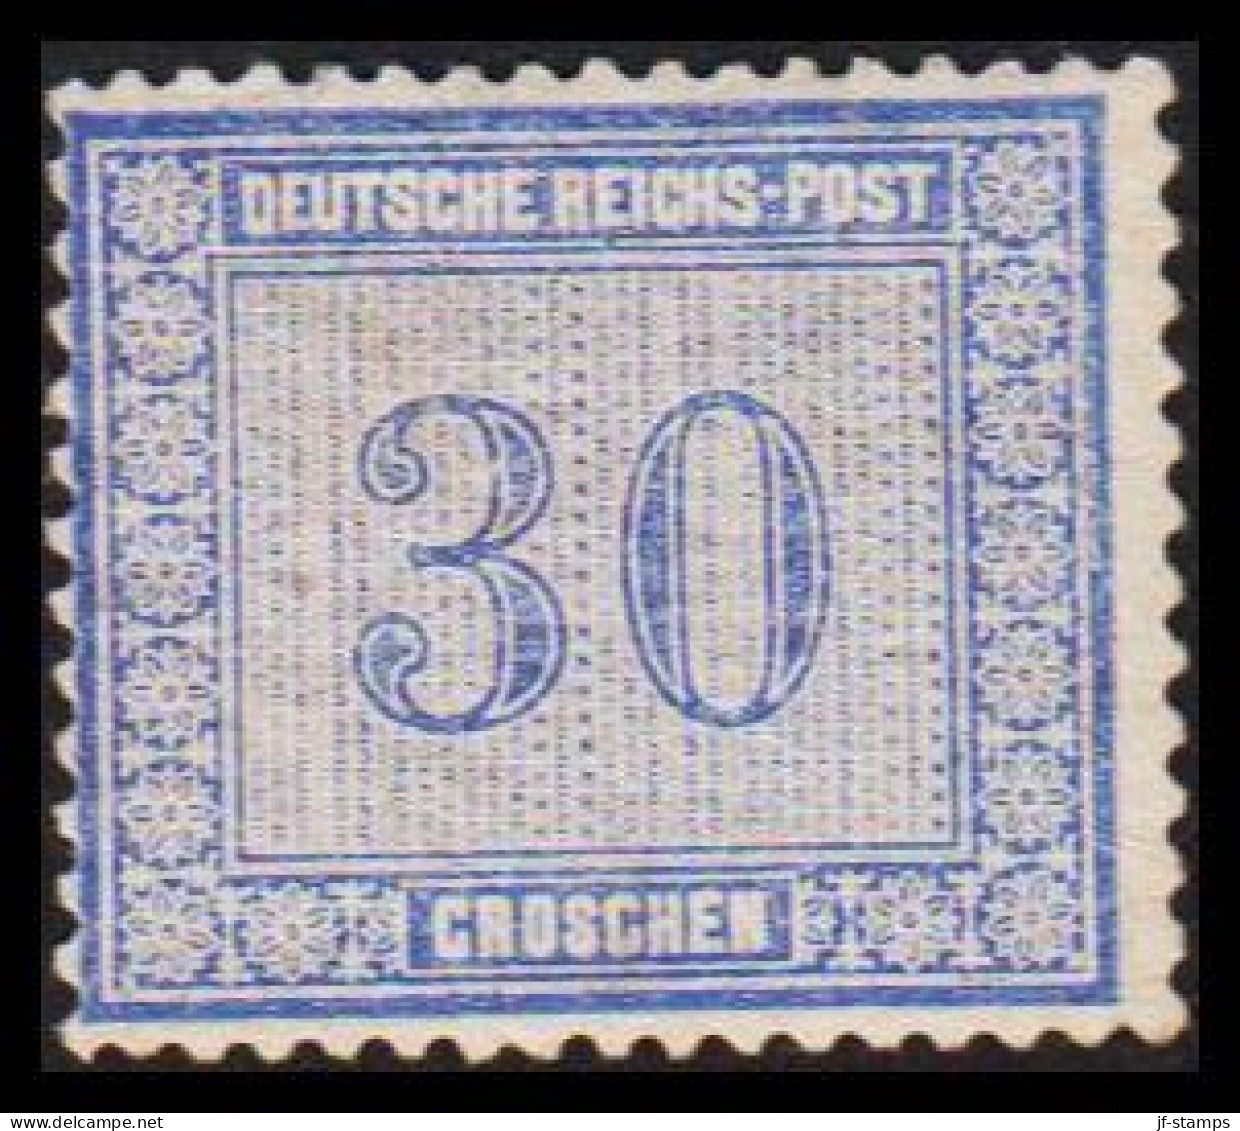 1872. DEUTSCHE REICHS-POST. 30 GROSCHEN. Nice Stamp Hinged, Thin Spot Reverse.  (Michel 13) - JF534008 - Ungebraucht